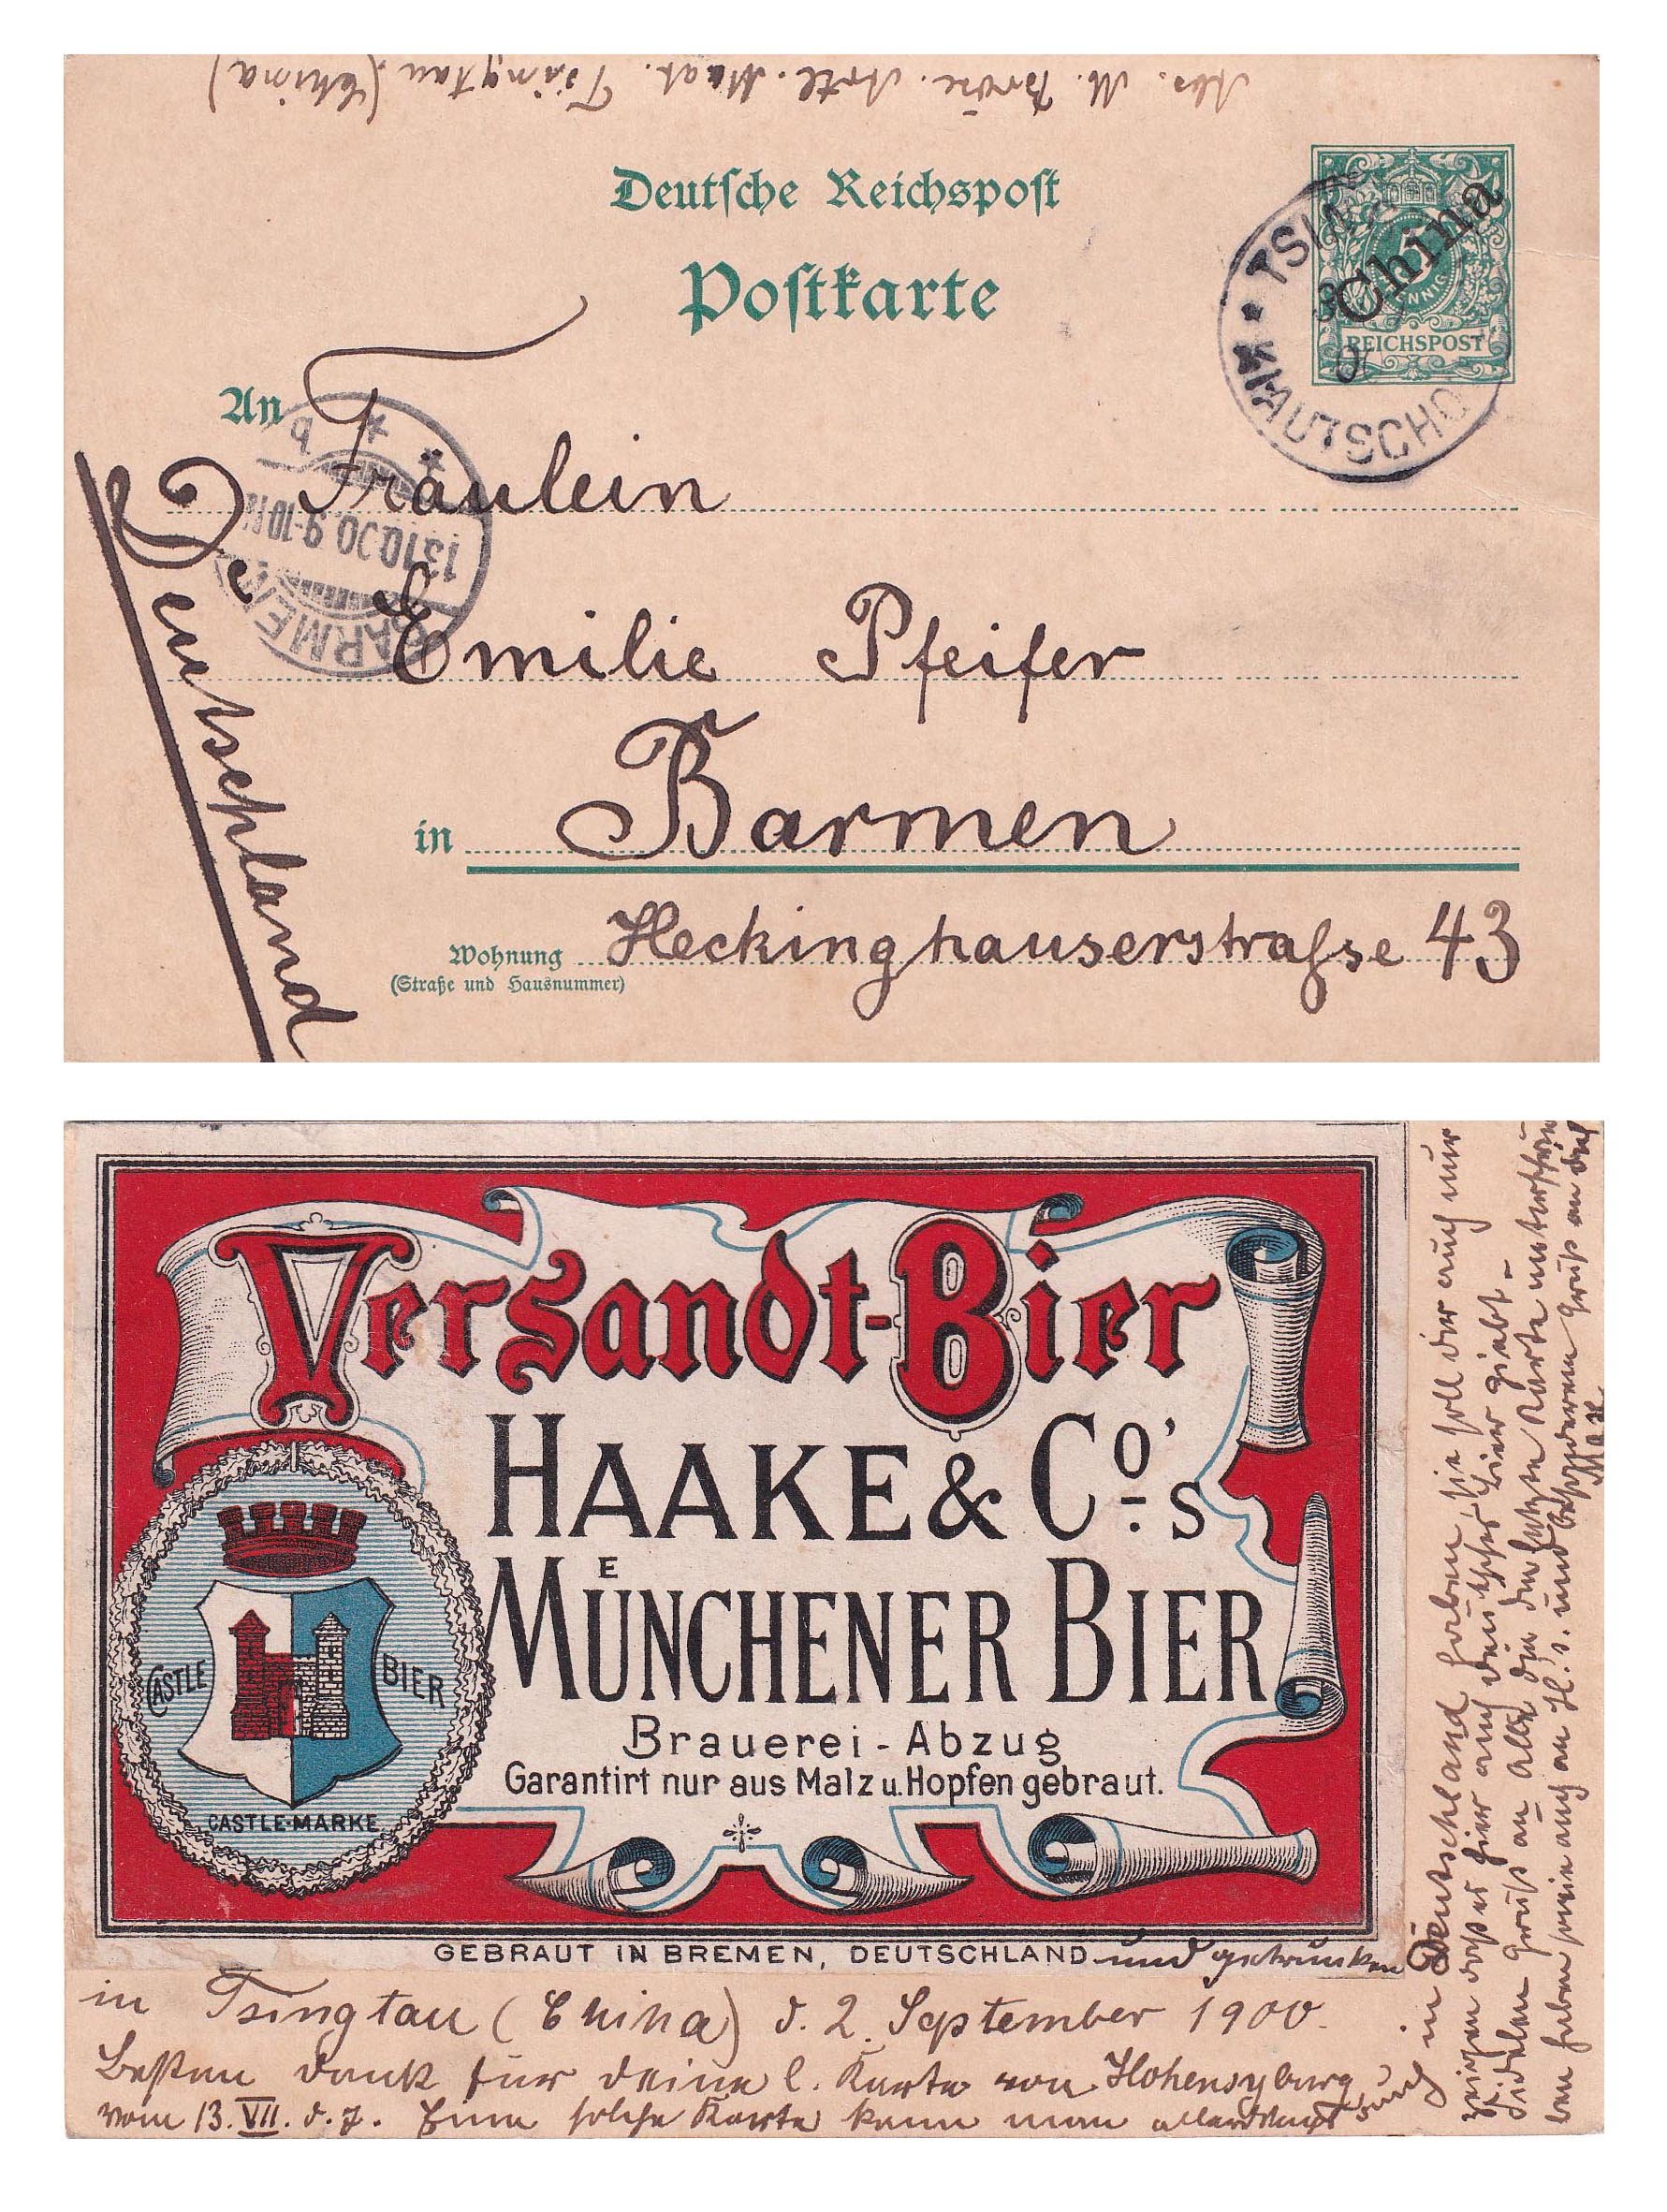 Etikett der Brauerei Haake & Co in Bremen auf Postkarte, 1900 (ARCHIV DEUTSCHER BIERETIKETTEN CC BY-NC-SA)